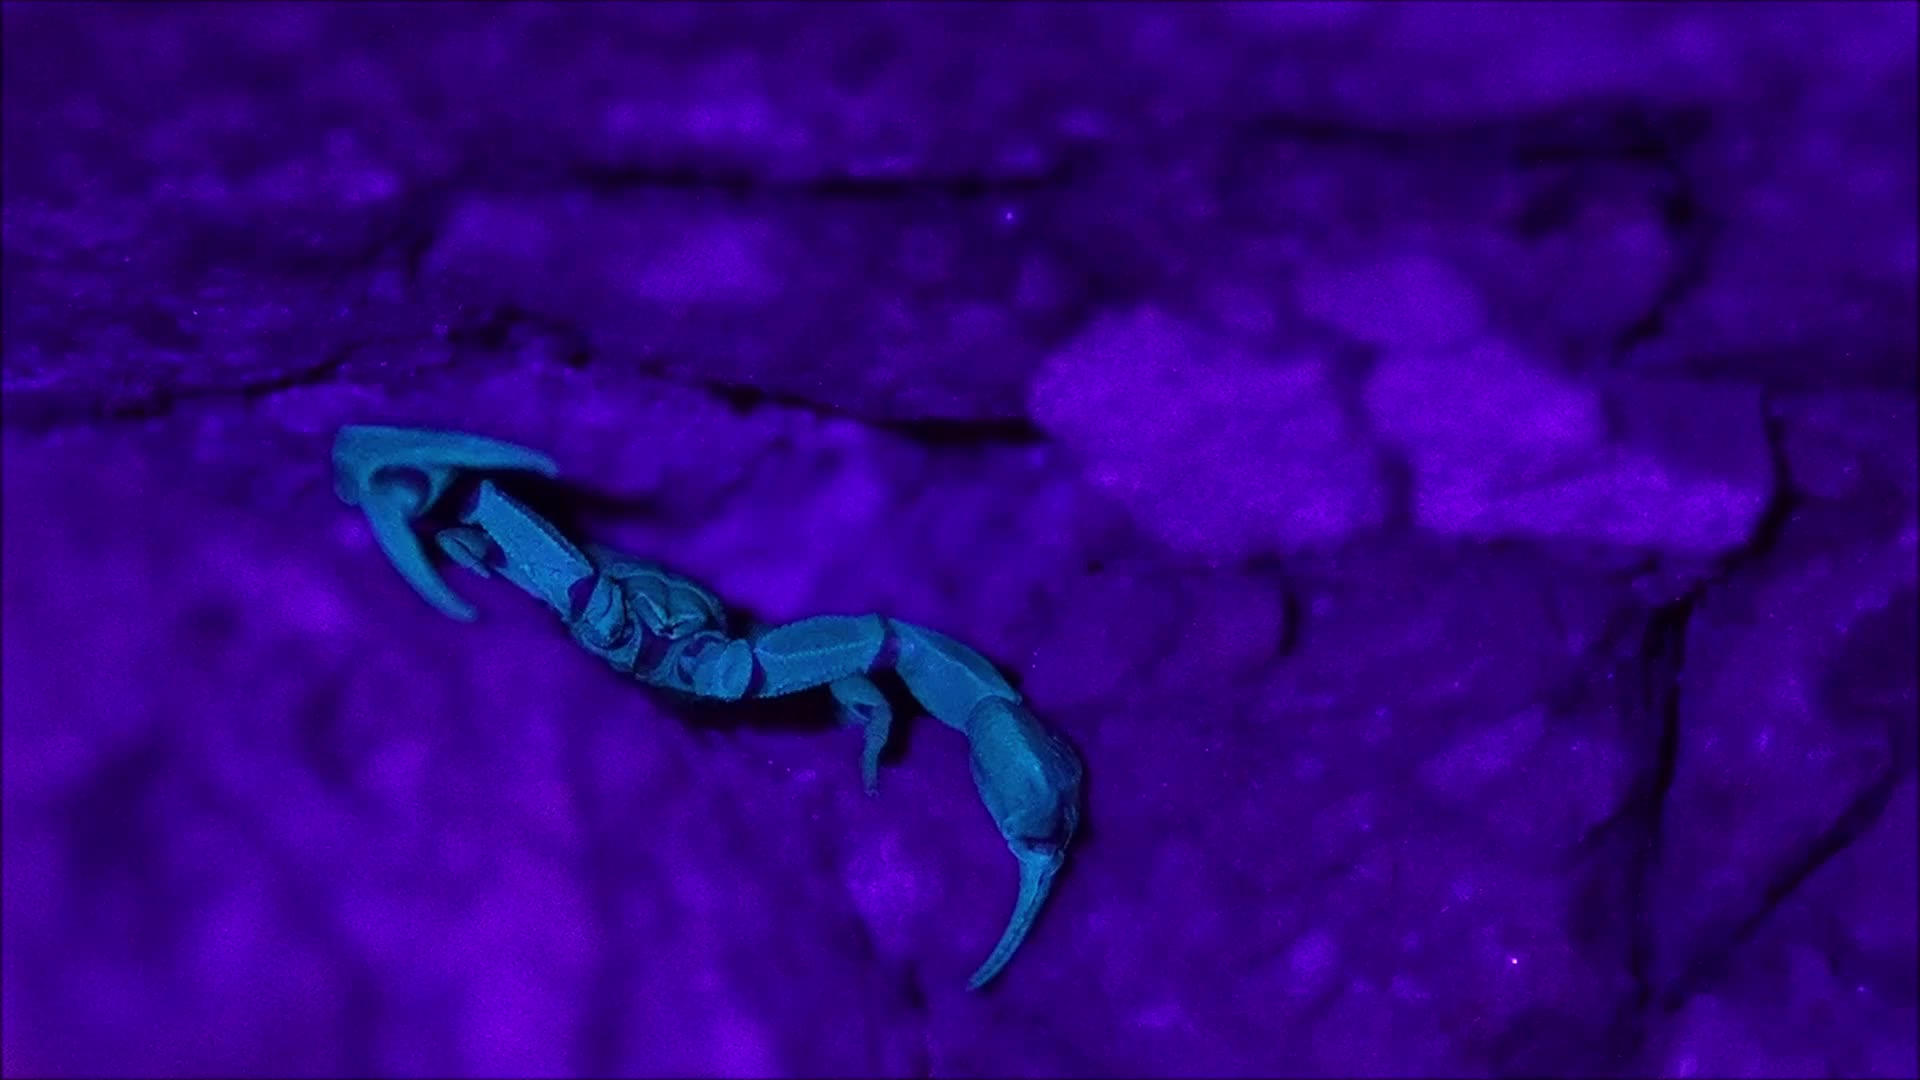 Video - Clip: Phát hiện bọ cạp phát sáng dưới tia UV trong bức tường